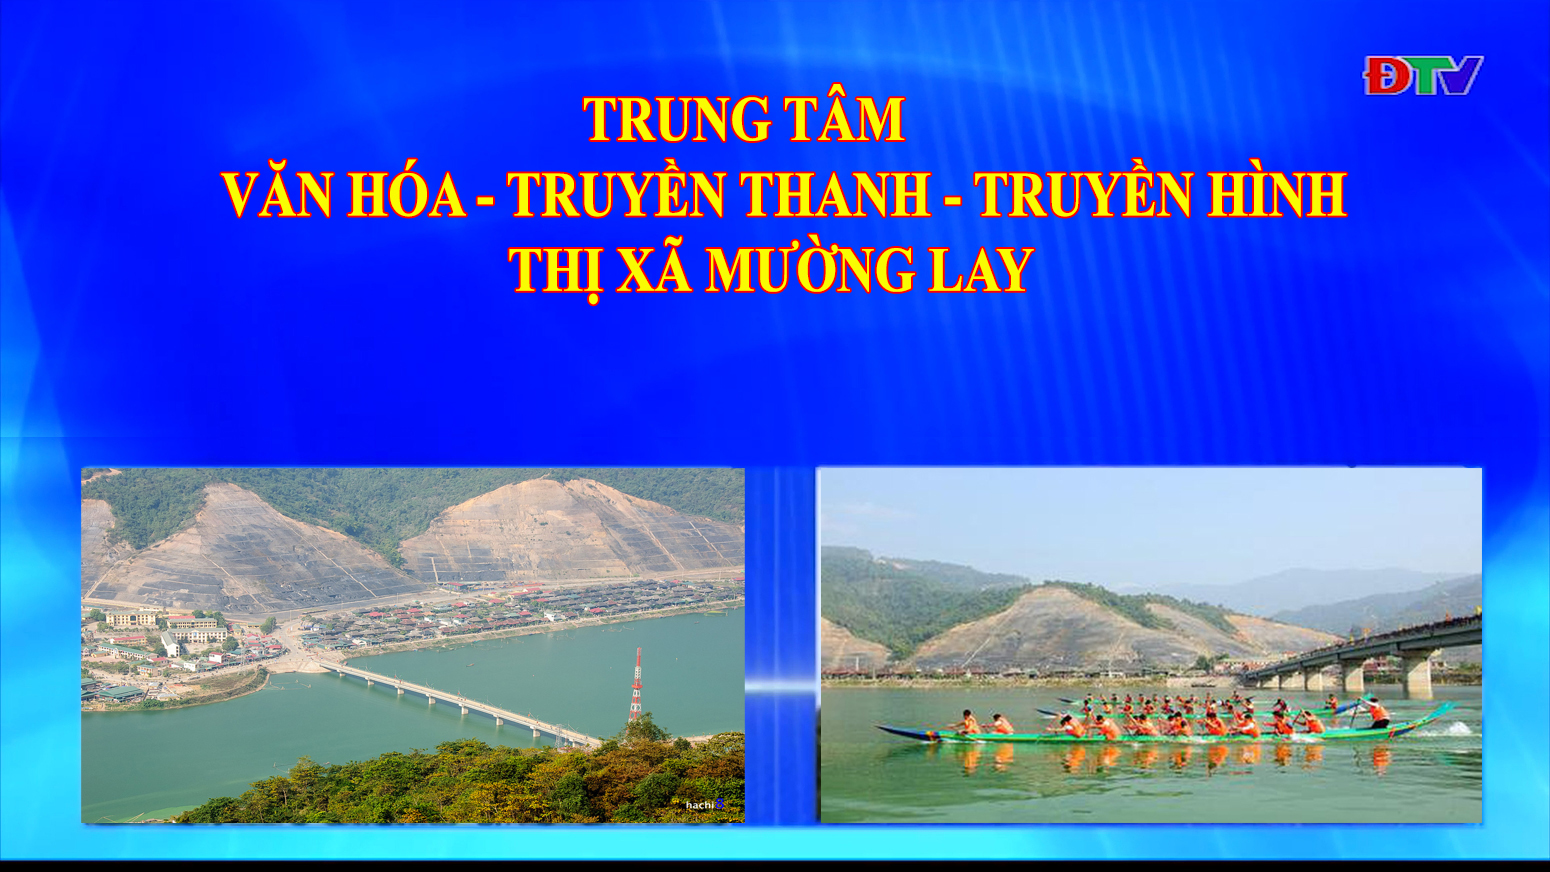 Trung tâm VH-TTTH thị xã Mường Lay (Ngày 25-2-2022)